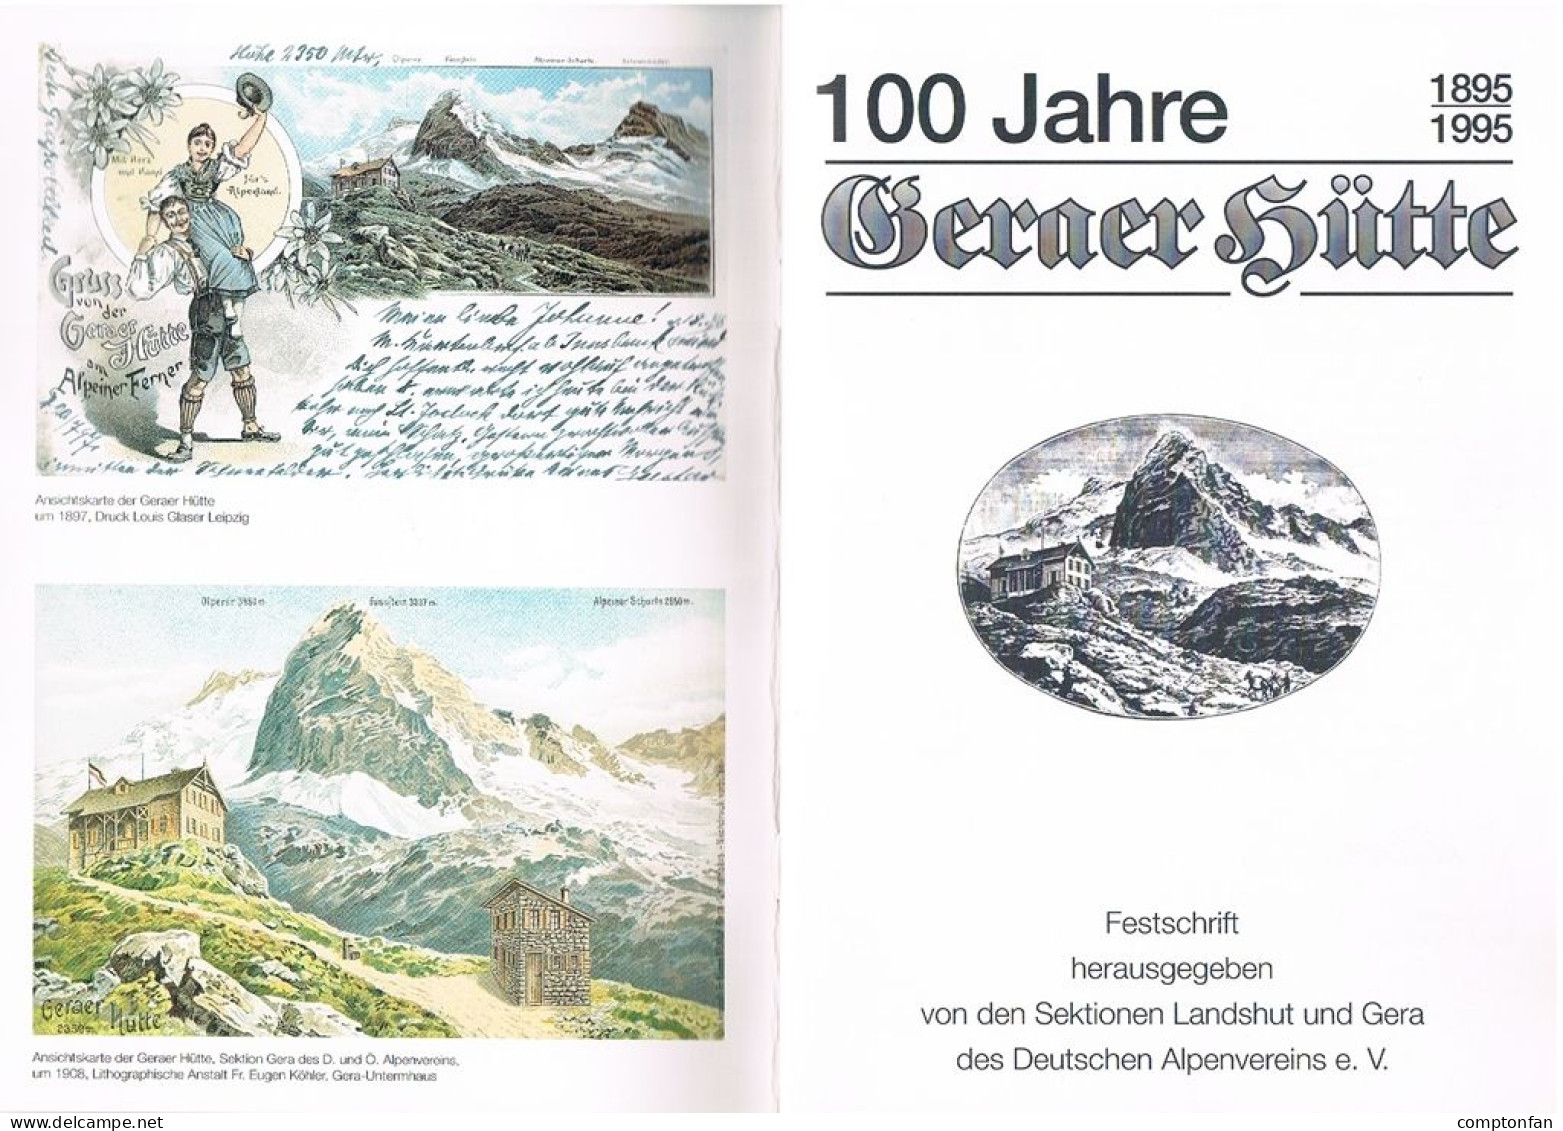 B100 895 Festschrift 100 Jahre Geraer Hütte Deutscher Alpenverein Rarität ! - Libri Vecchi E Da Collezione